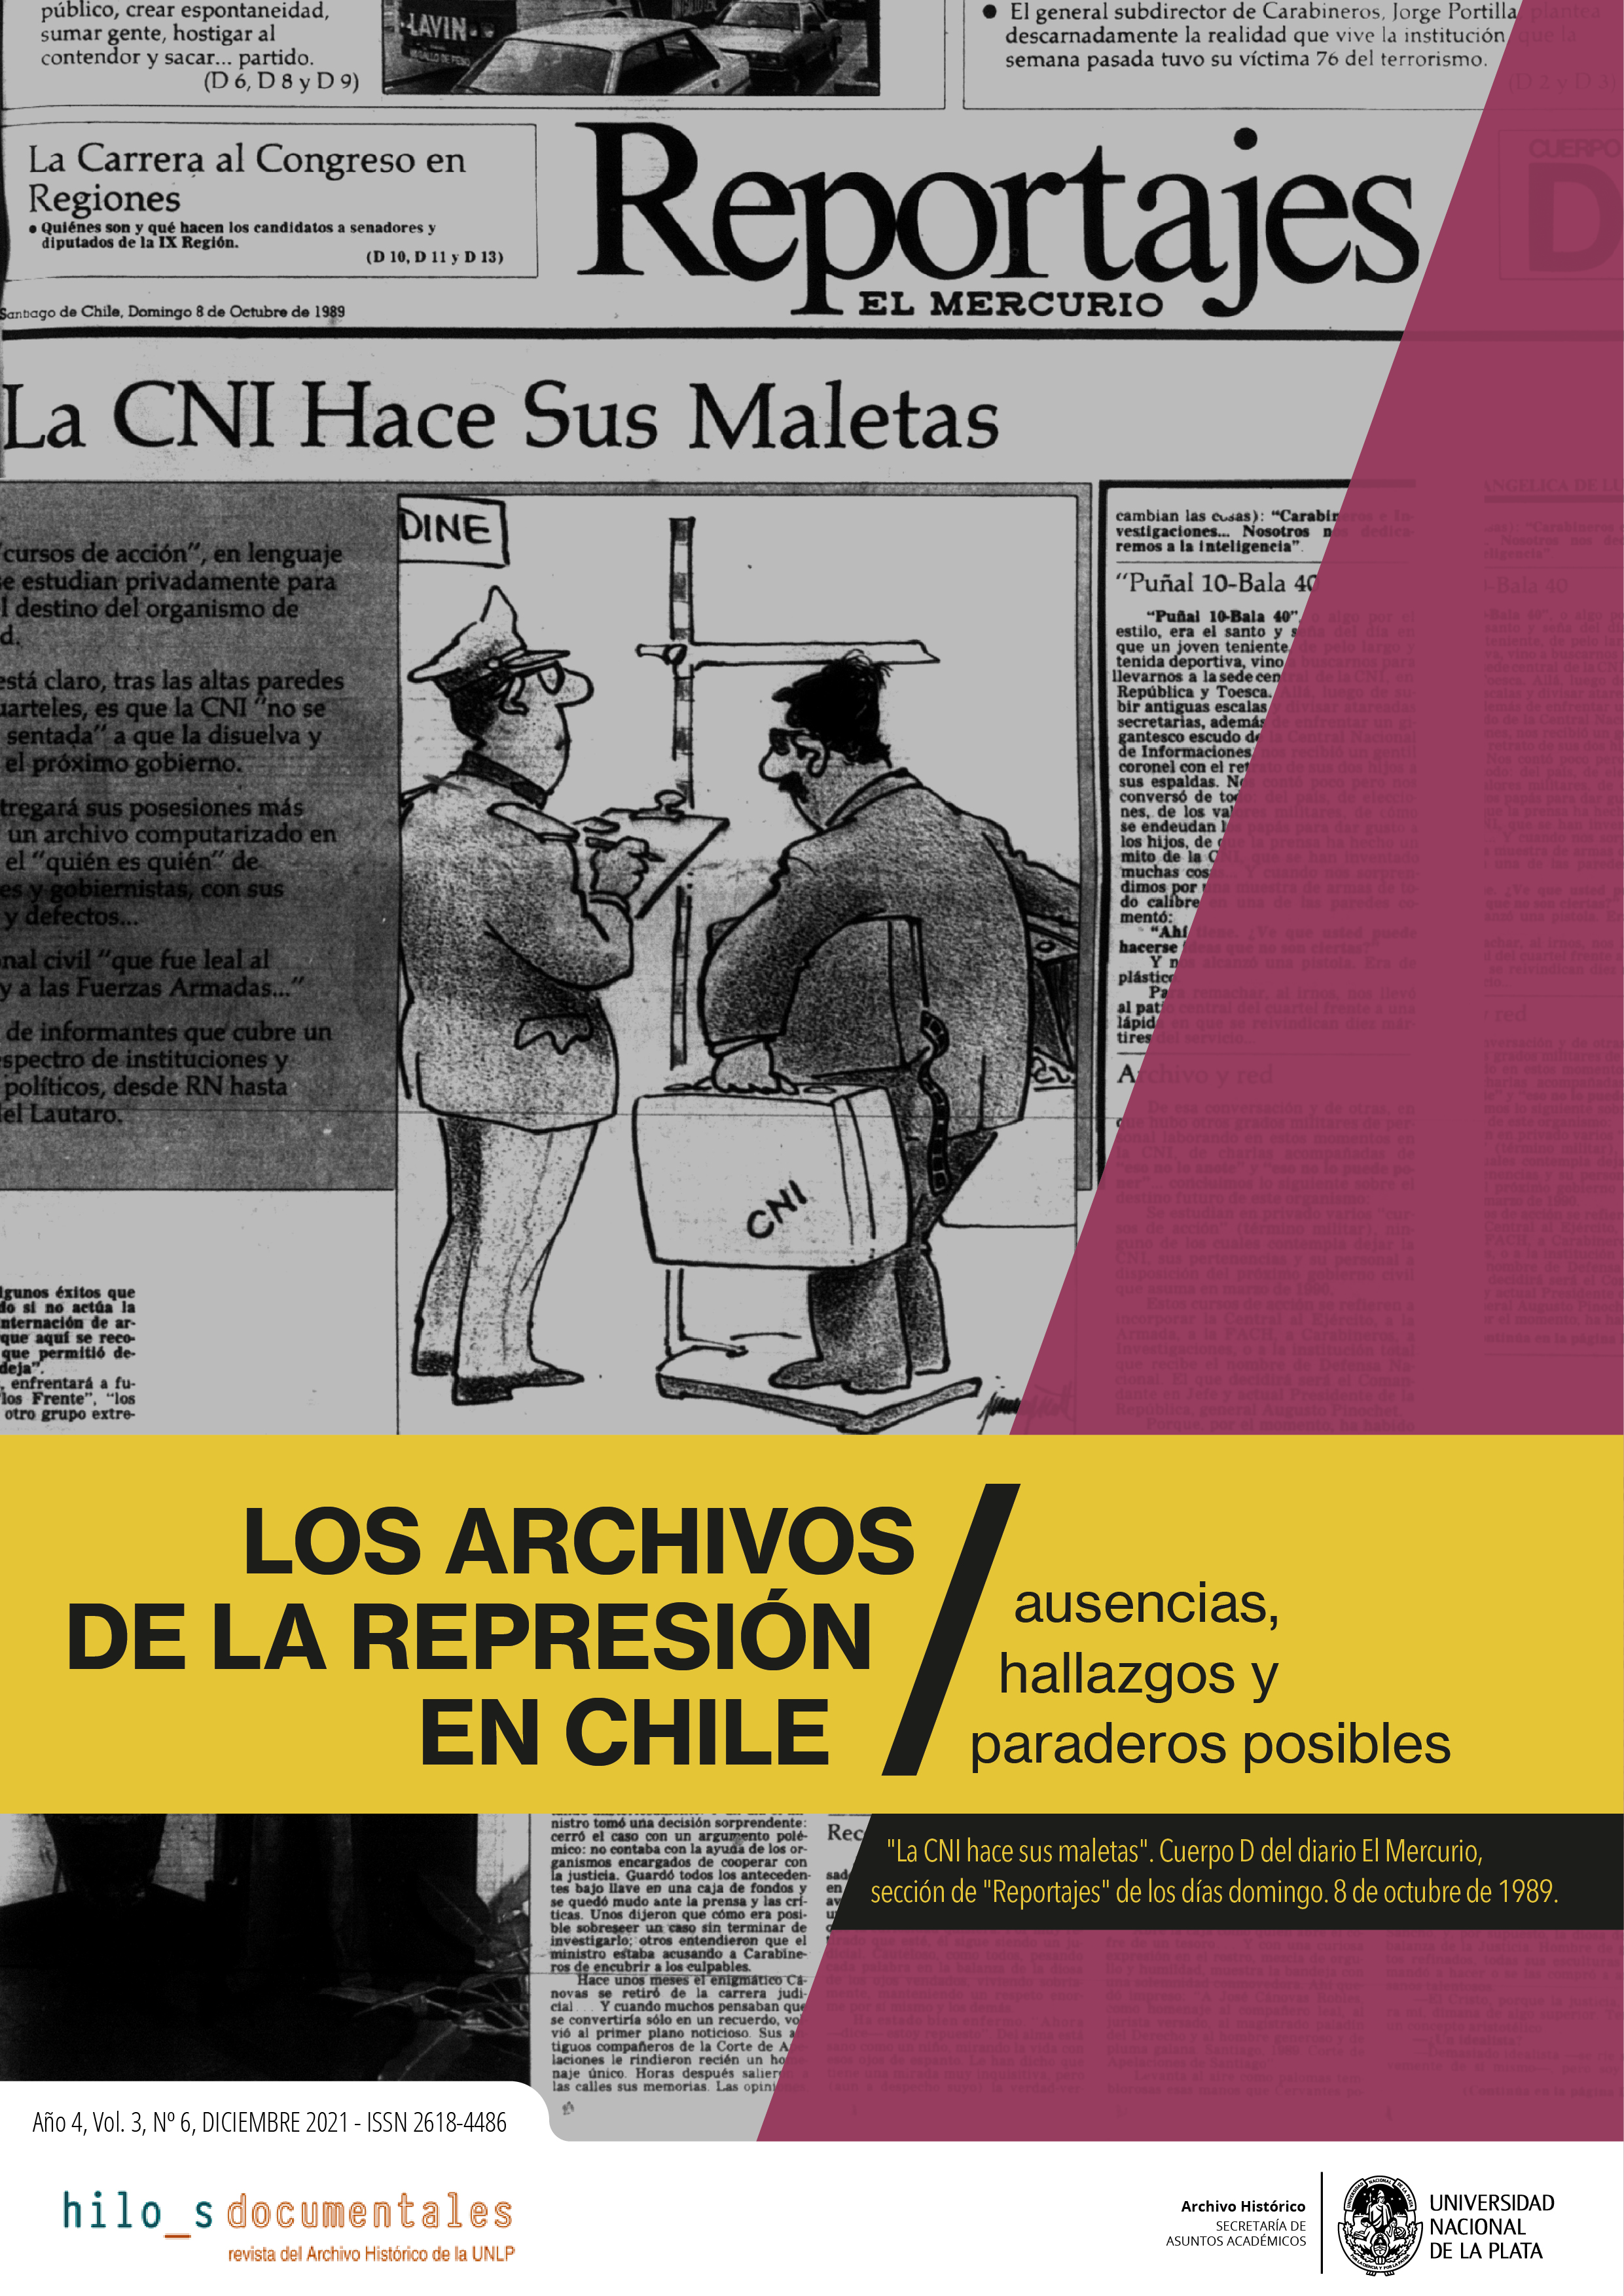 					Ver Vol. 3 Núm. 6 (4): Dossier: Los Archivos de la Represión en Chile: ausencias, hallazgos y paraderos posibles
				